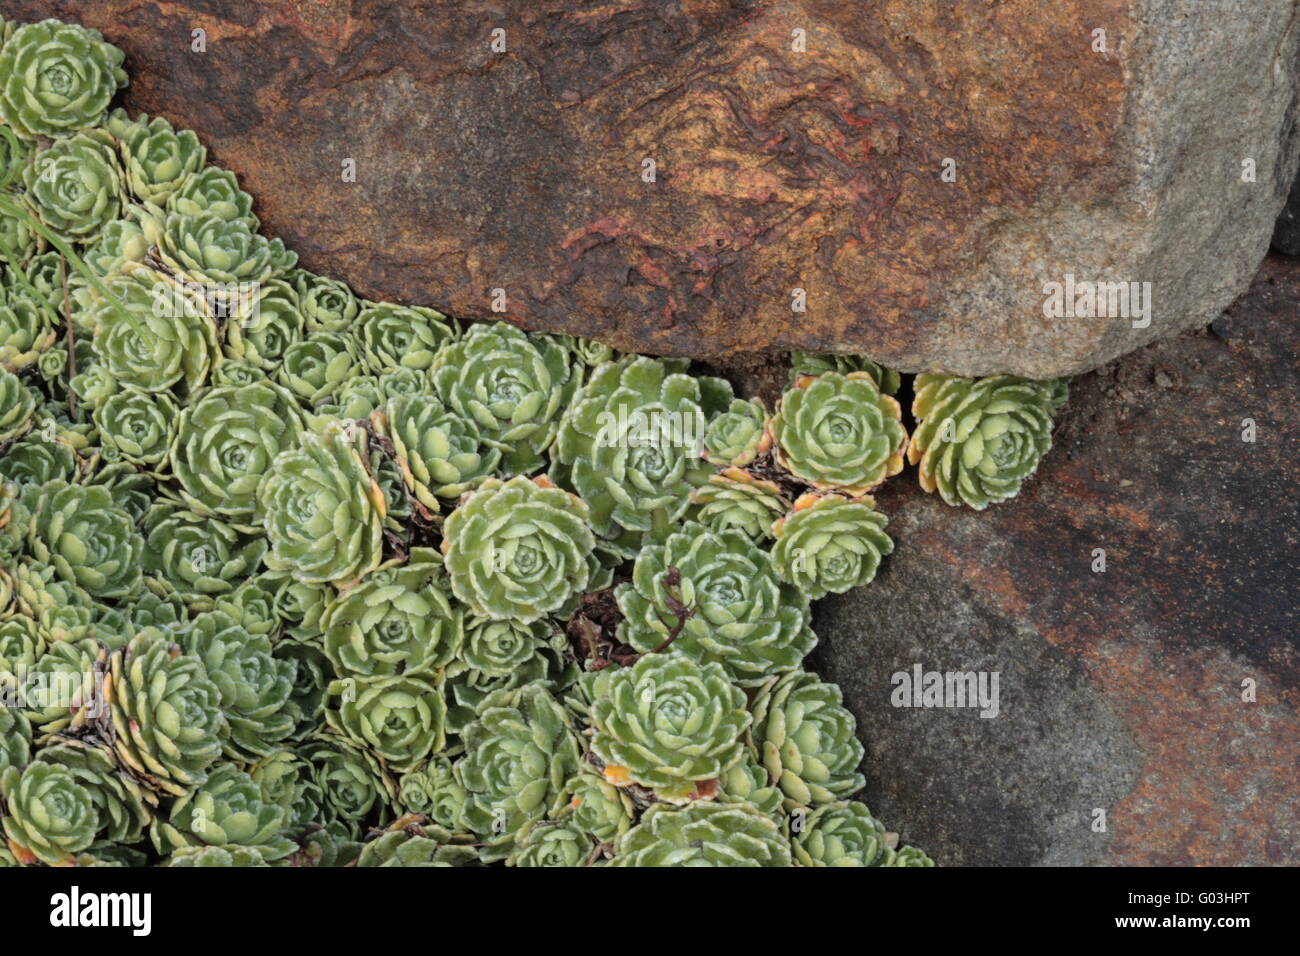 White mountain saxifrage - Saxifraga paniculata Stock Photo